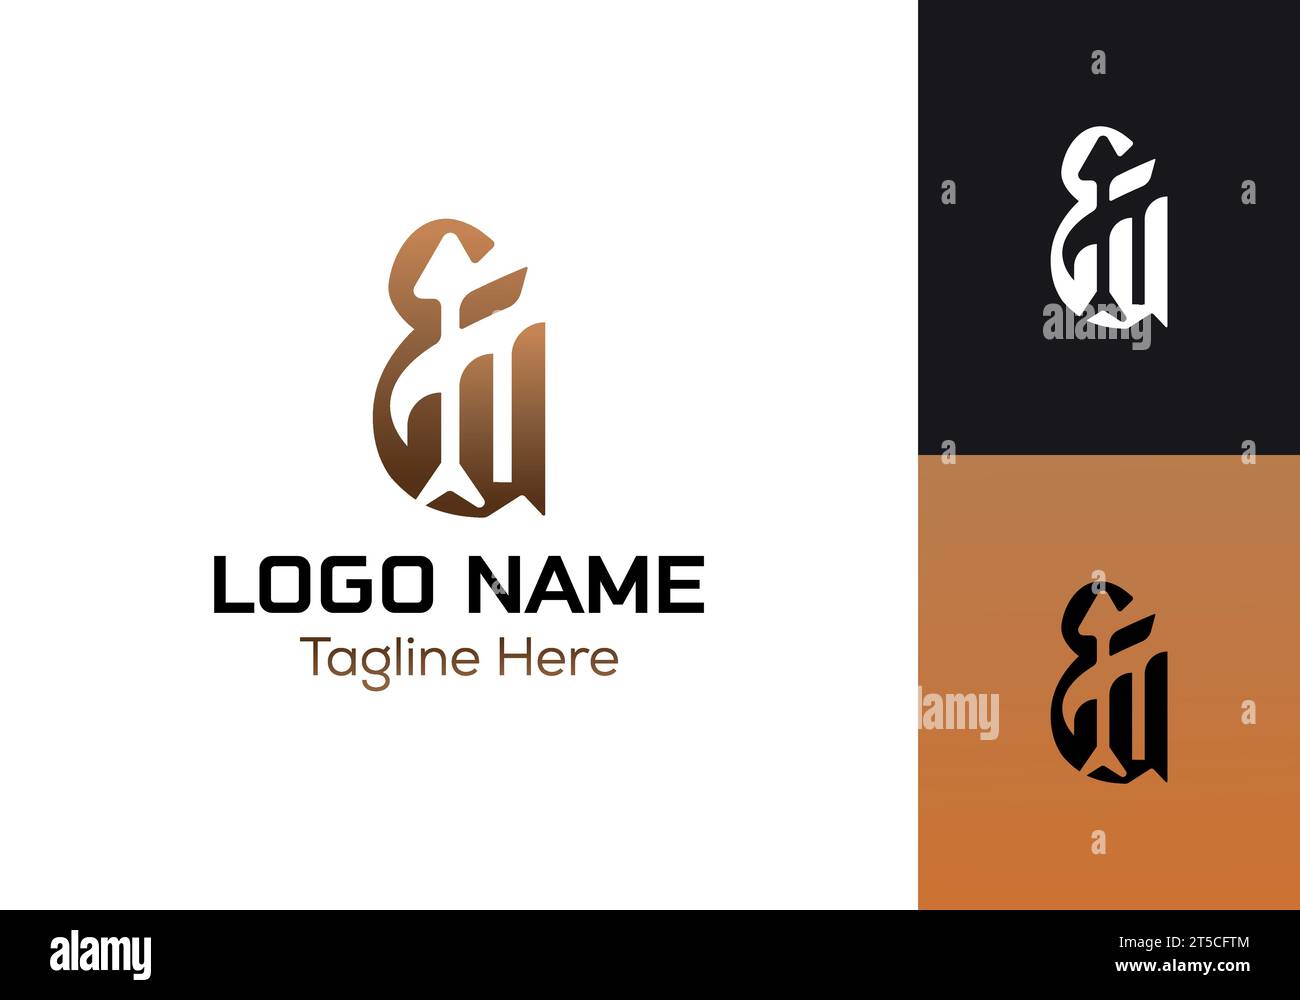 Logo AIN in lettere arabe moderne. E' minimalista, moderno, elegante e dal design semplice. adatto per il digitale, società di partnership, società, fondazioni Illustrazione Vettoriale